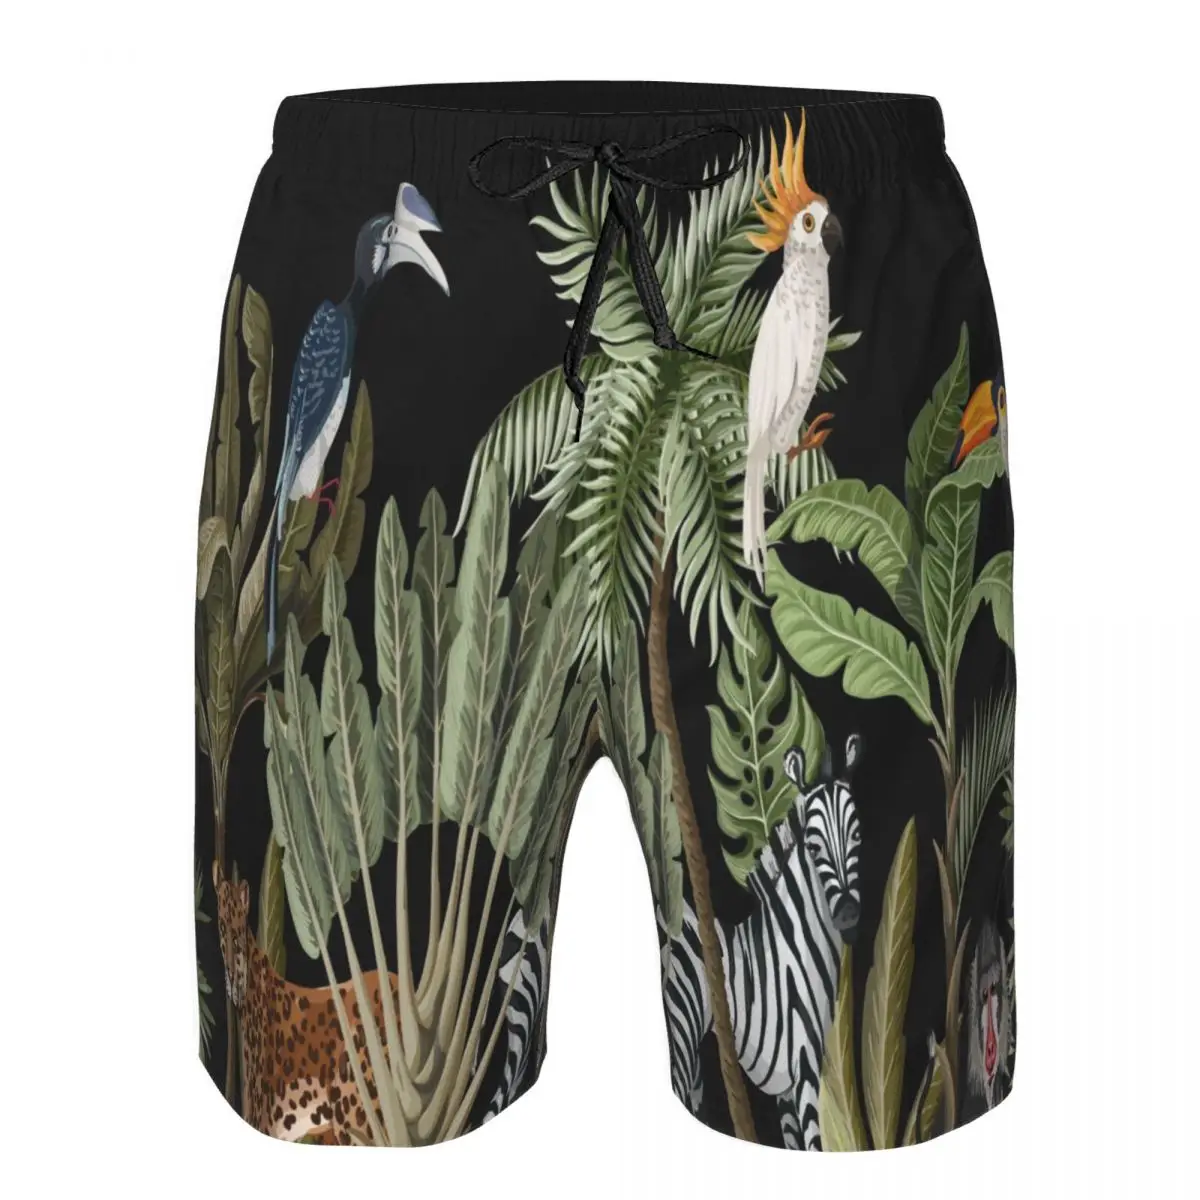 

Мужские плавательные шорты, купальники, тропическая пальма, банановые листья и джунгли, мужские плавки, купальник, пляжная одежда, бордшорты